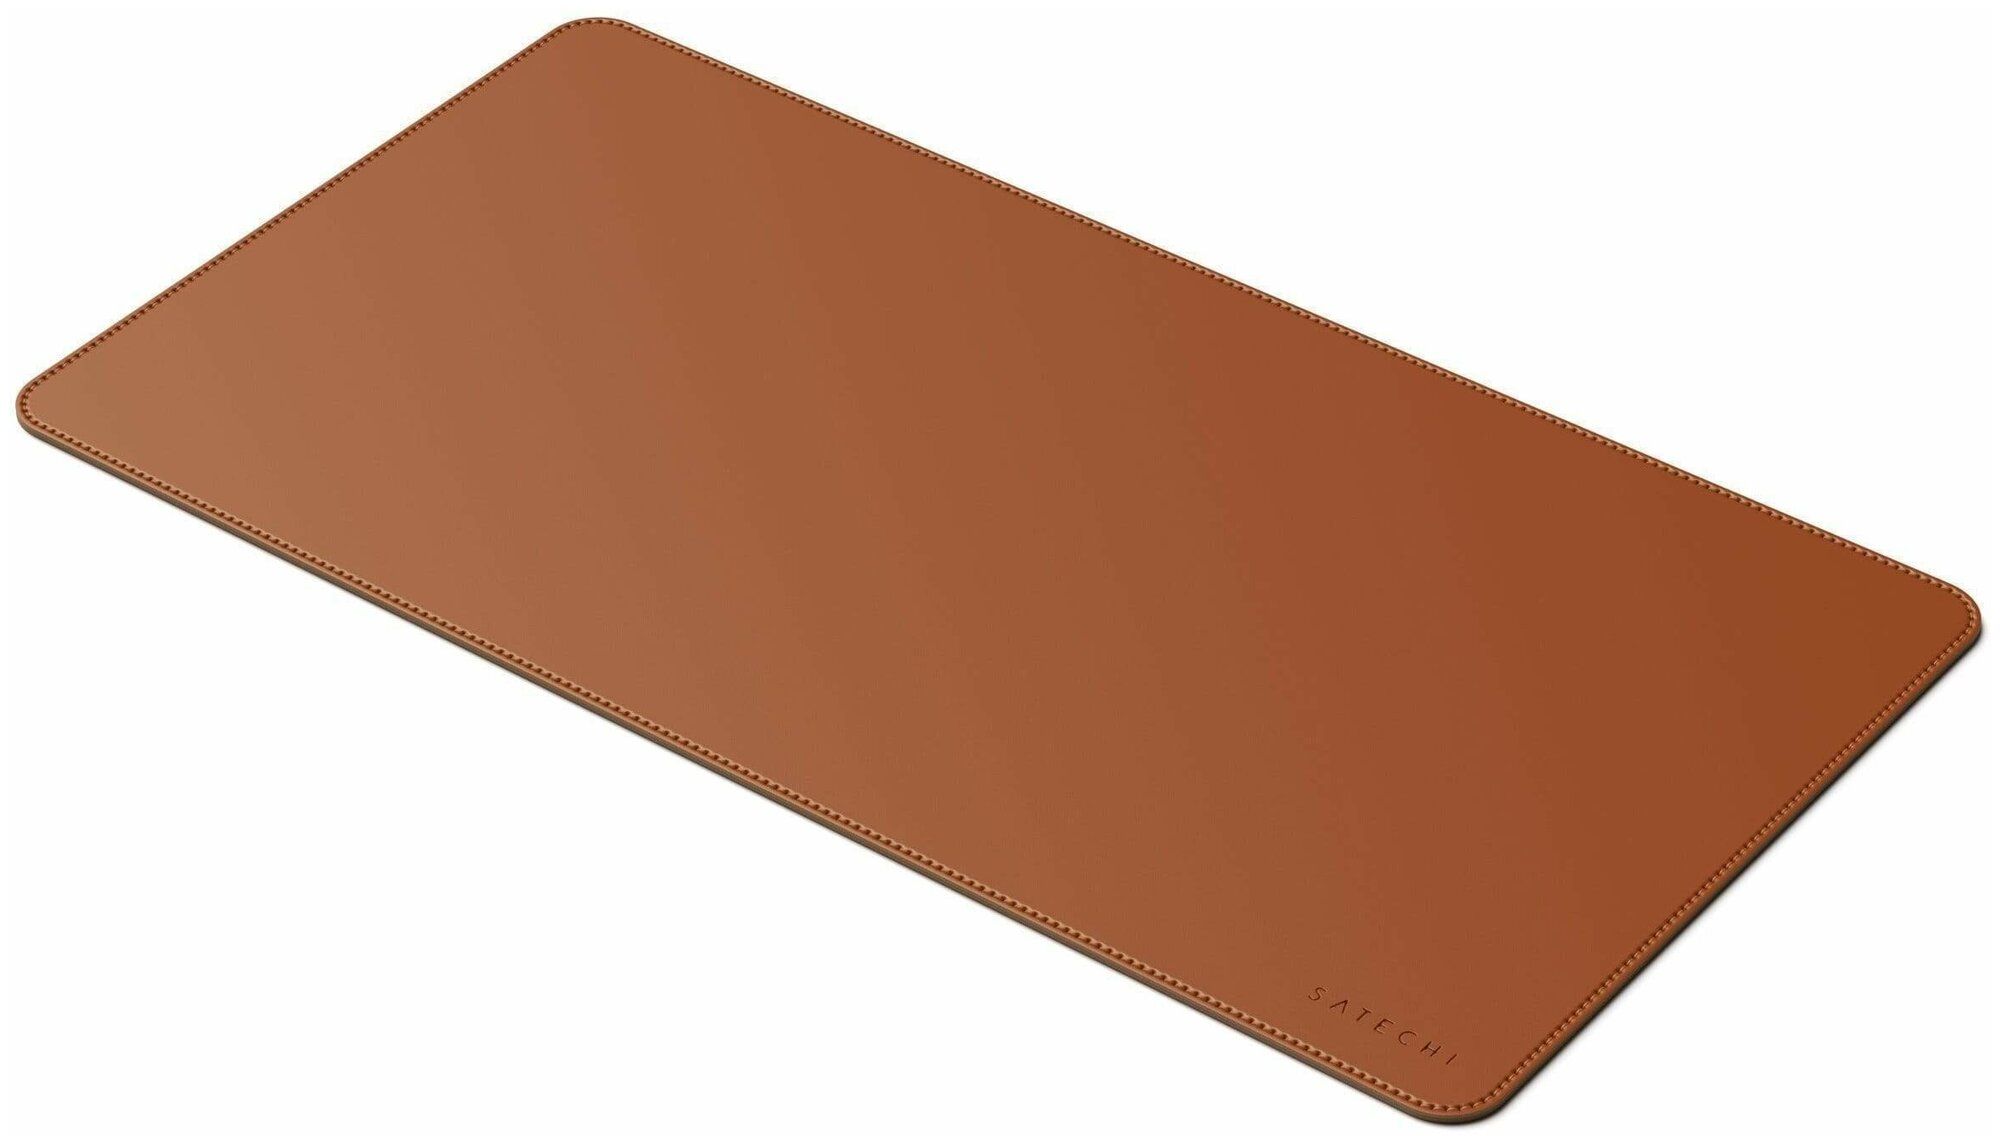 Коврик Satechi Eco Leather Deskmate Размер 58,5 x 31 см. коричневый ST-LDMN - фото 1